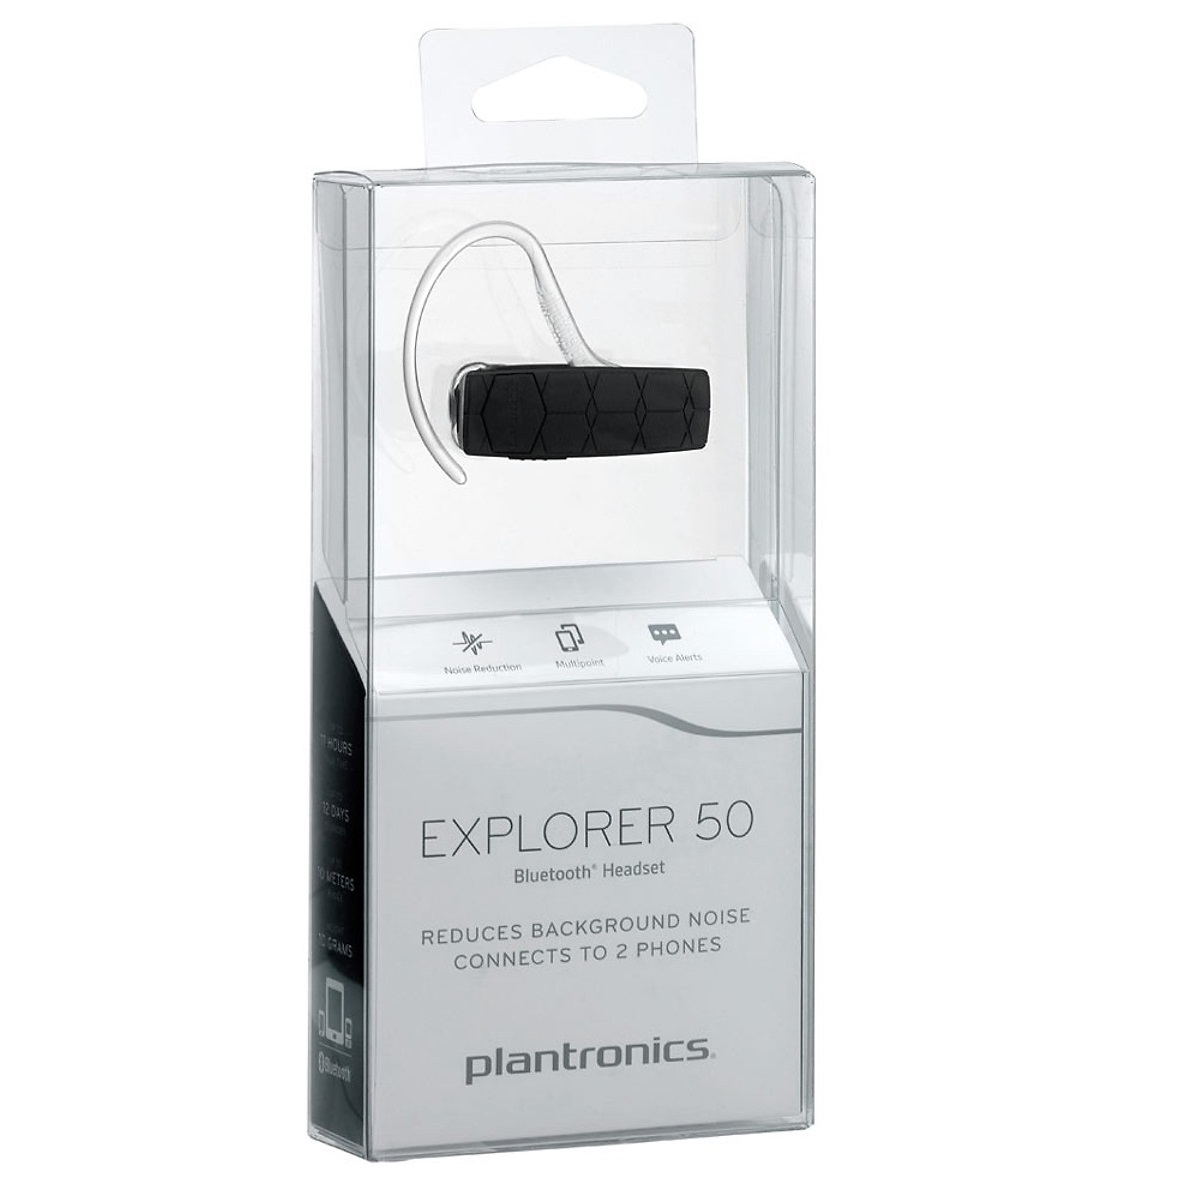 Tai nghe Plantronics Explorer 50 là sự lựa chọn hoàn hảo để tận hưởng âm nhạc tuyệt vời. Với thiết kế tiện dụng, tai nghe này mang đến trải nghiệm nghe nhạc tốt nhất cho bạn.